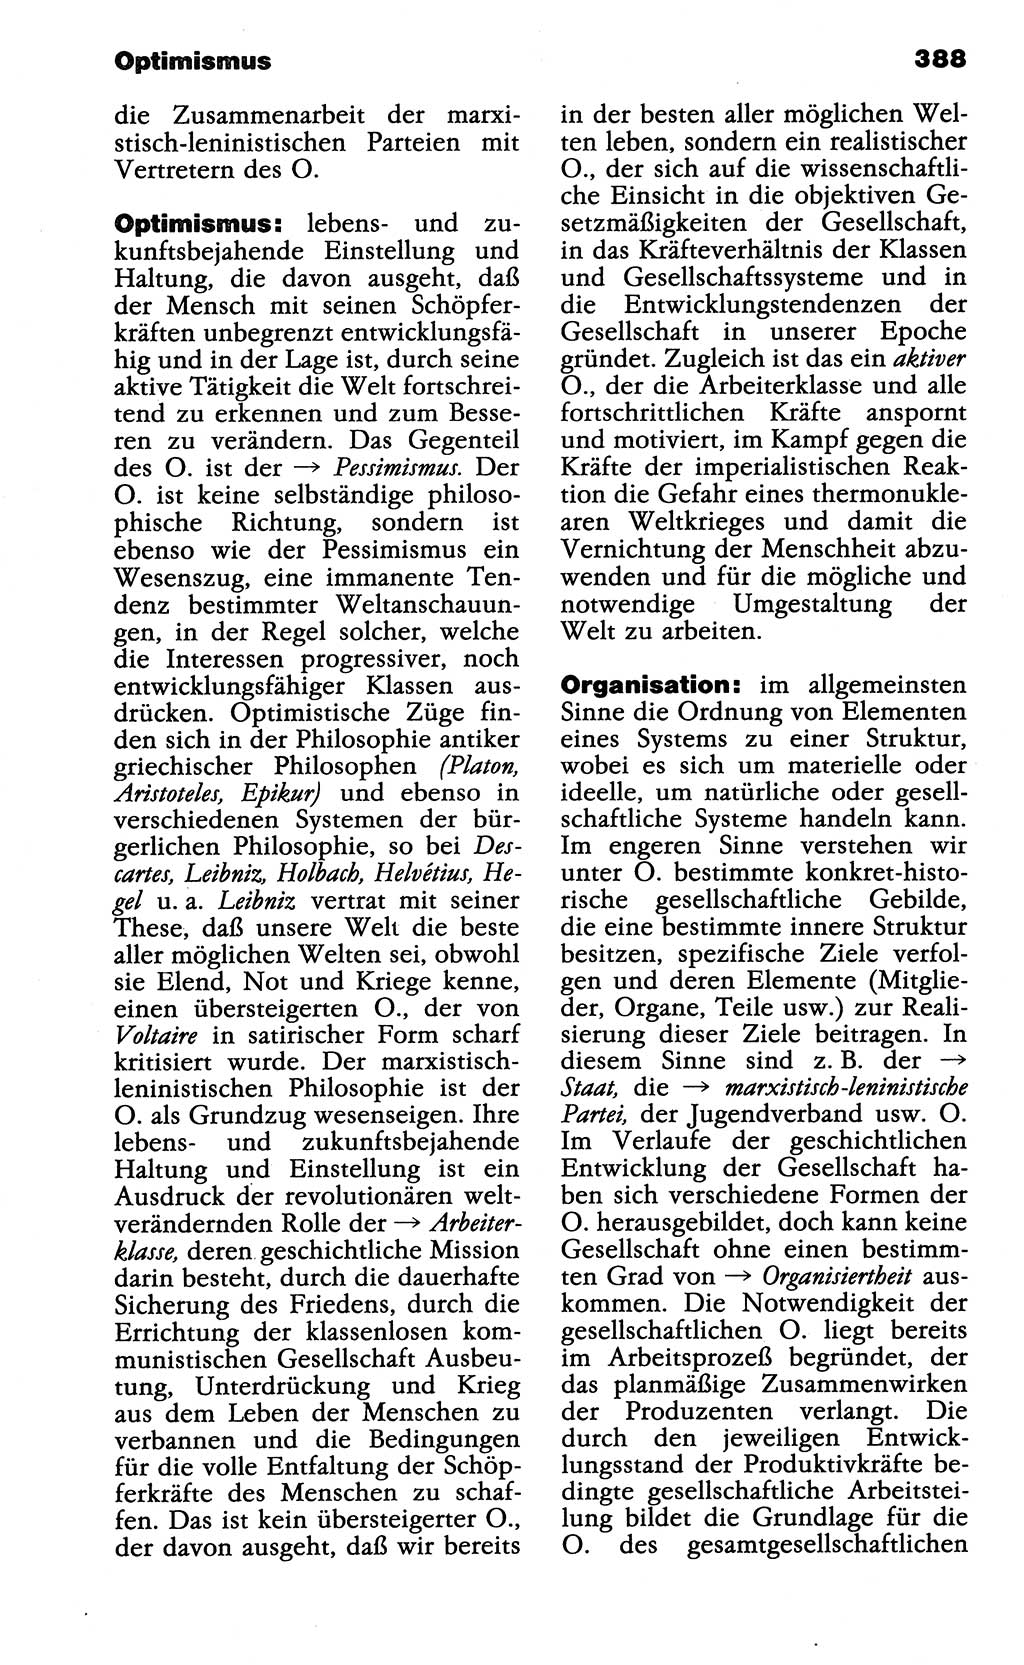 Wörterbuch der marxistisch-leninistischen Philosophie [Deutsche Demokratische Republik (DDR)] 1985, Seite 388 (Wb. ML Phil. DDR 1985, S. 388)